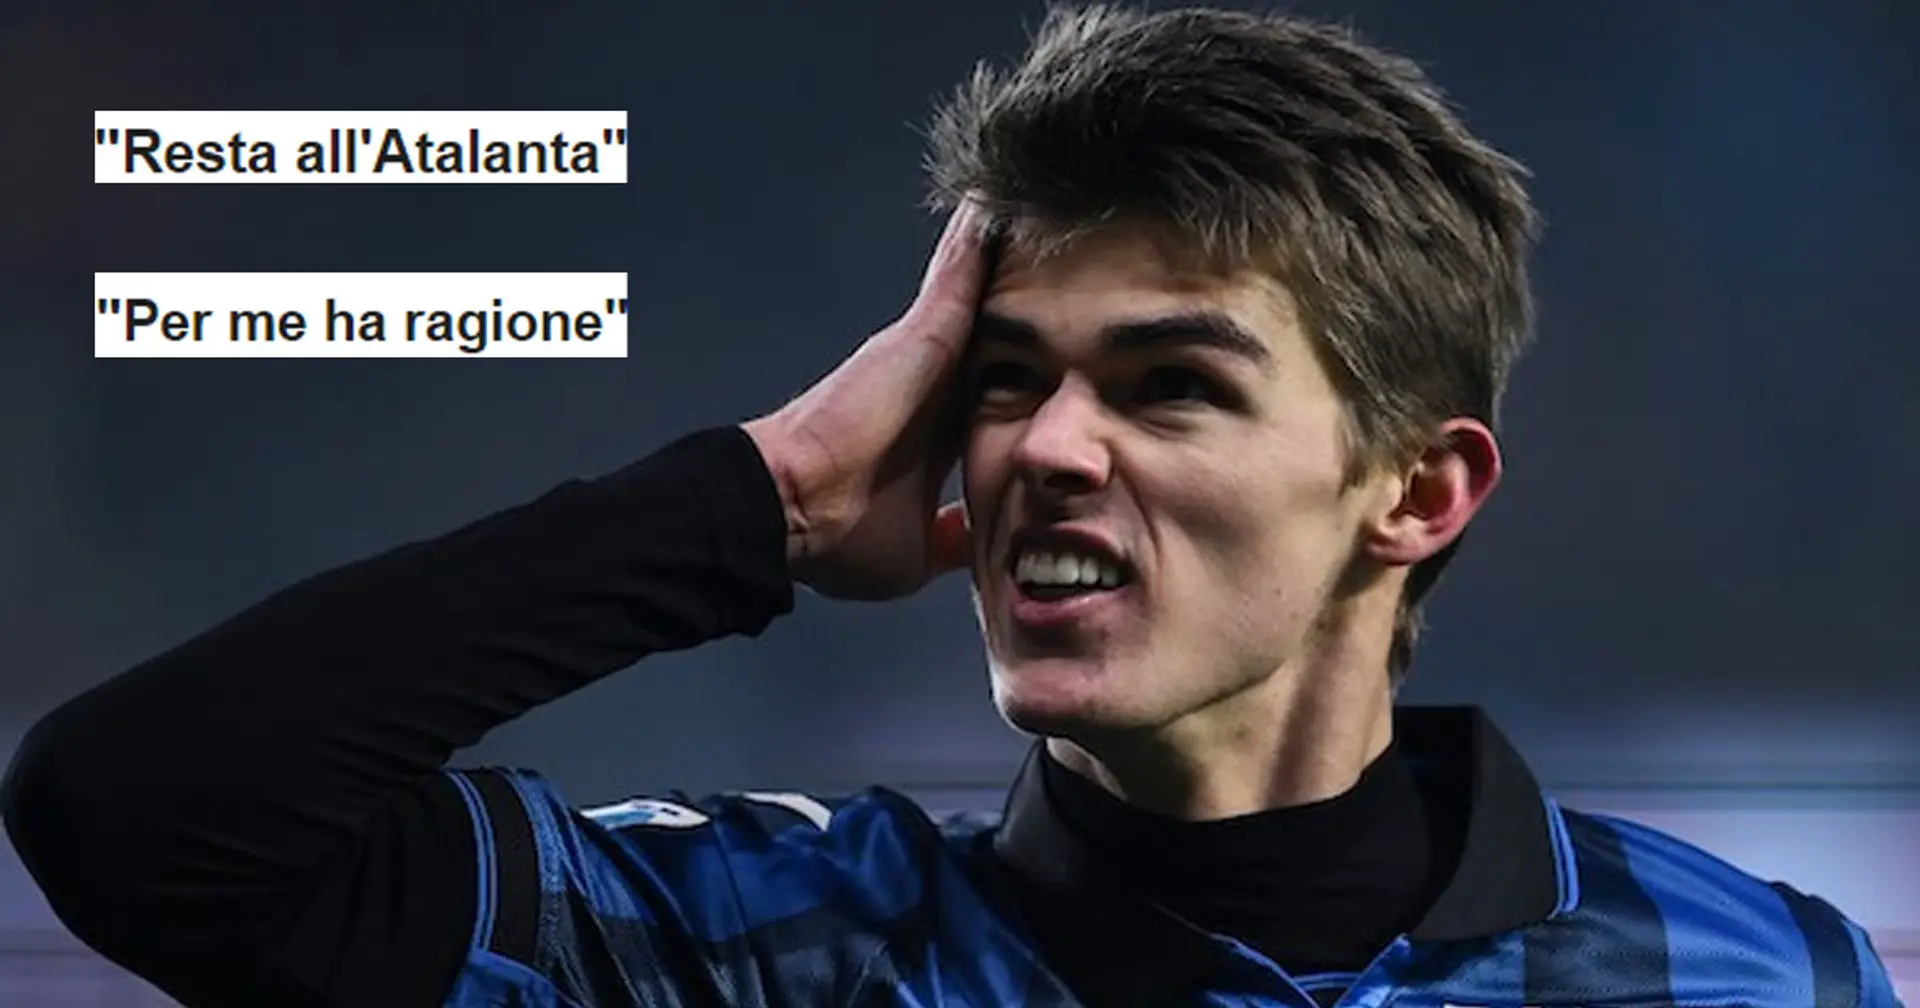 Da "Resta all'Atalanta" a "Per me ha ragione", tifosi del Milan divisi sulle parole di De Ketelaere sull'annata in rossonero